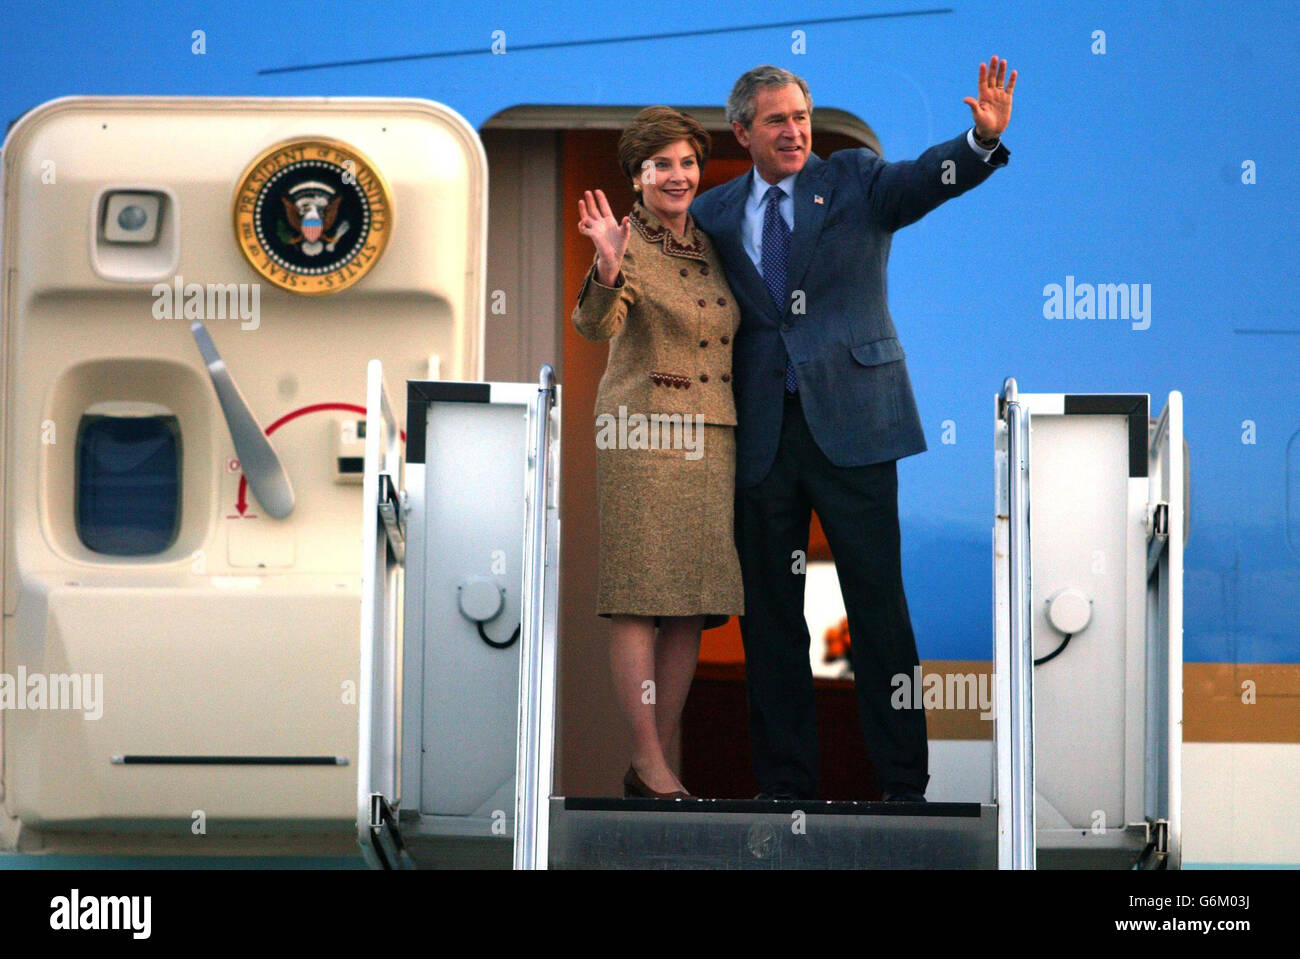 Präsident George W. Bush und seine Frau Laura, bevor sie nach seinem viertägigen Staatsbesuch vom internationalen Flughafen Teesside in Airforce One abreisen. Stockfoto